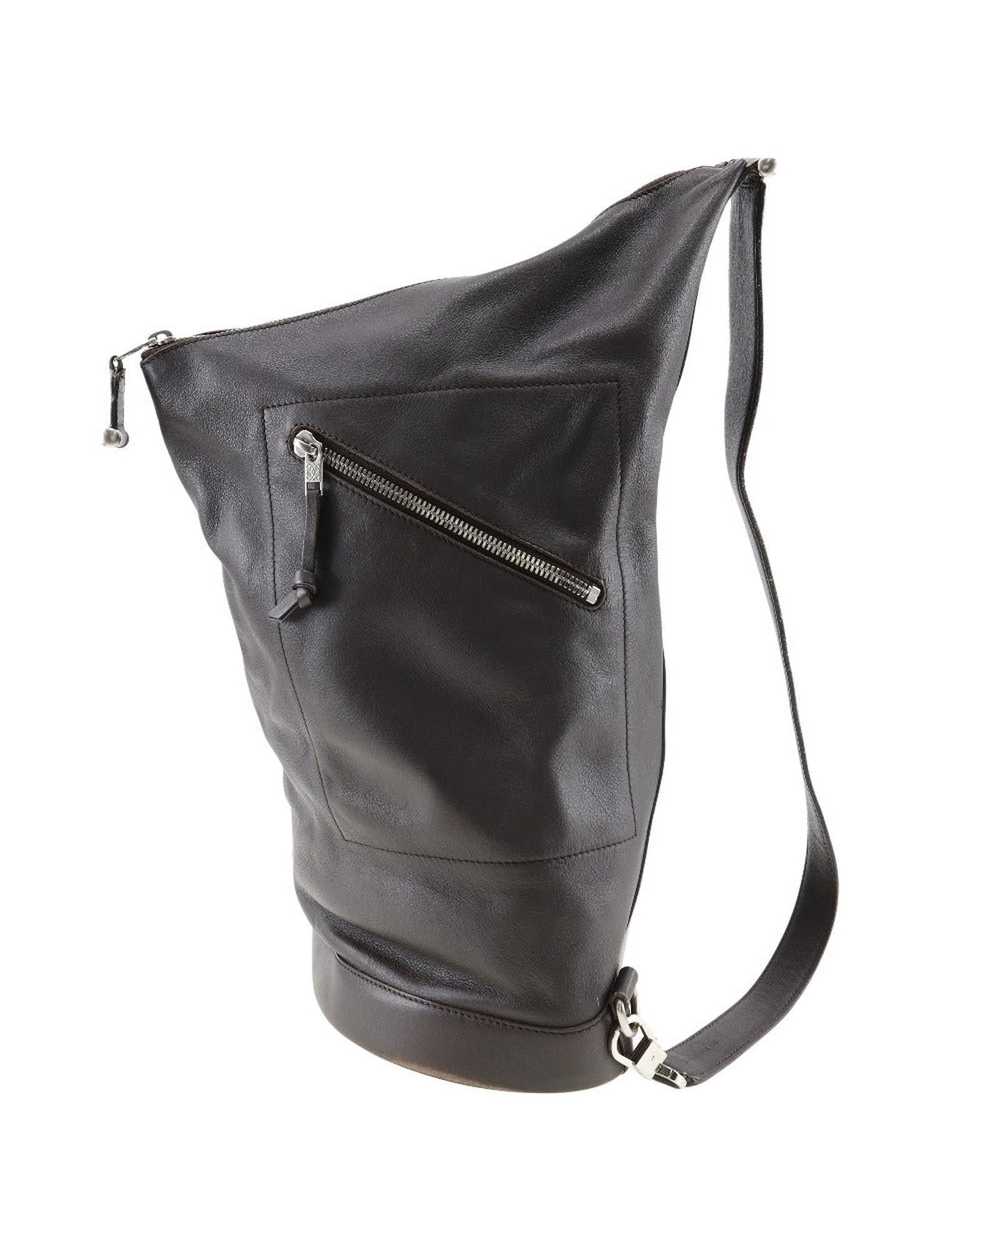 Loewe Brown Leather One-Shoulder Bag - image 1